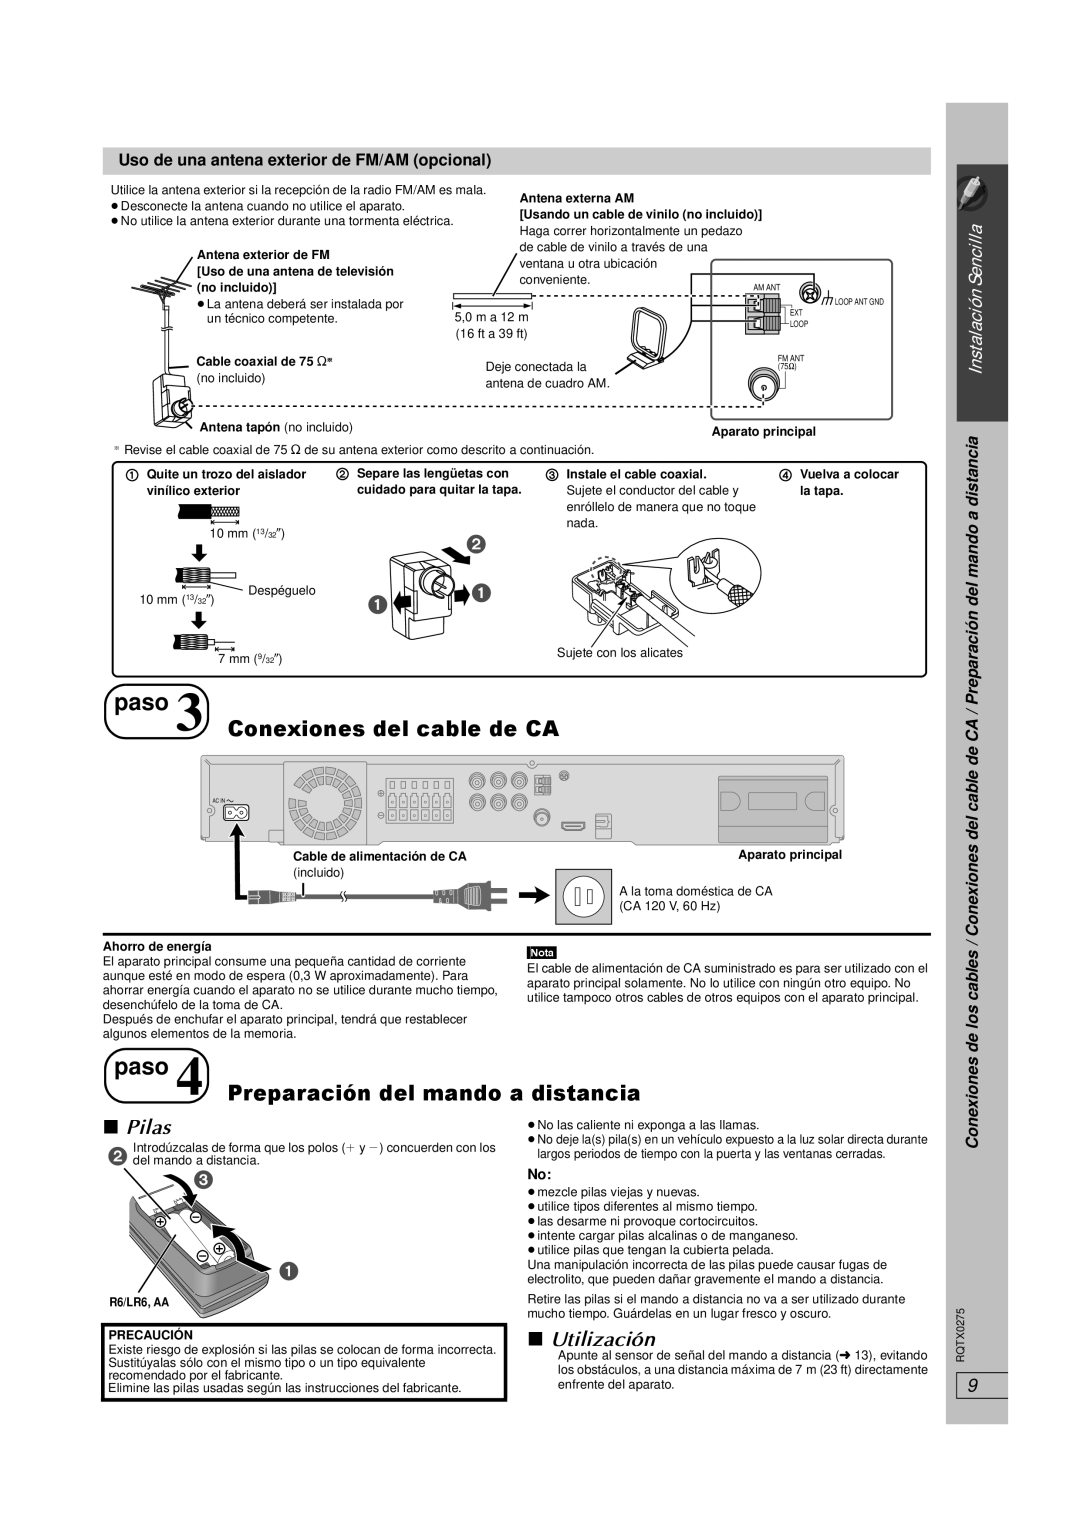 Panasonic SC-PT665 manual paso 3Conexiones del cable de CA, paso 4 Preparación del mando a distancia, ∫ Pilas, ∫Utilización 